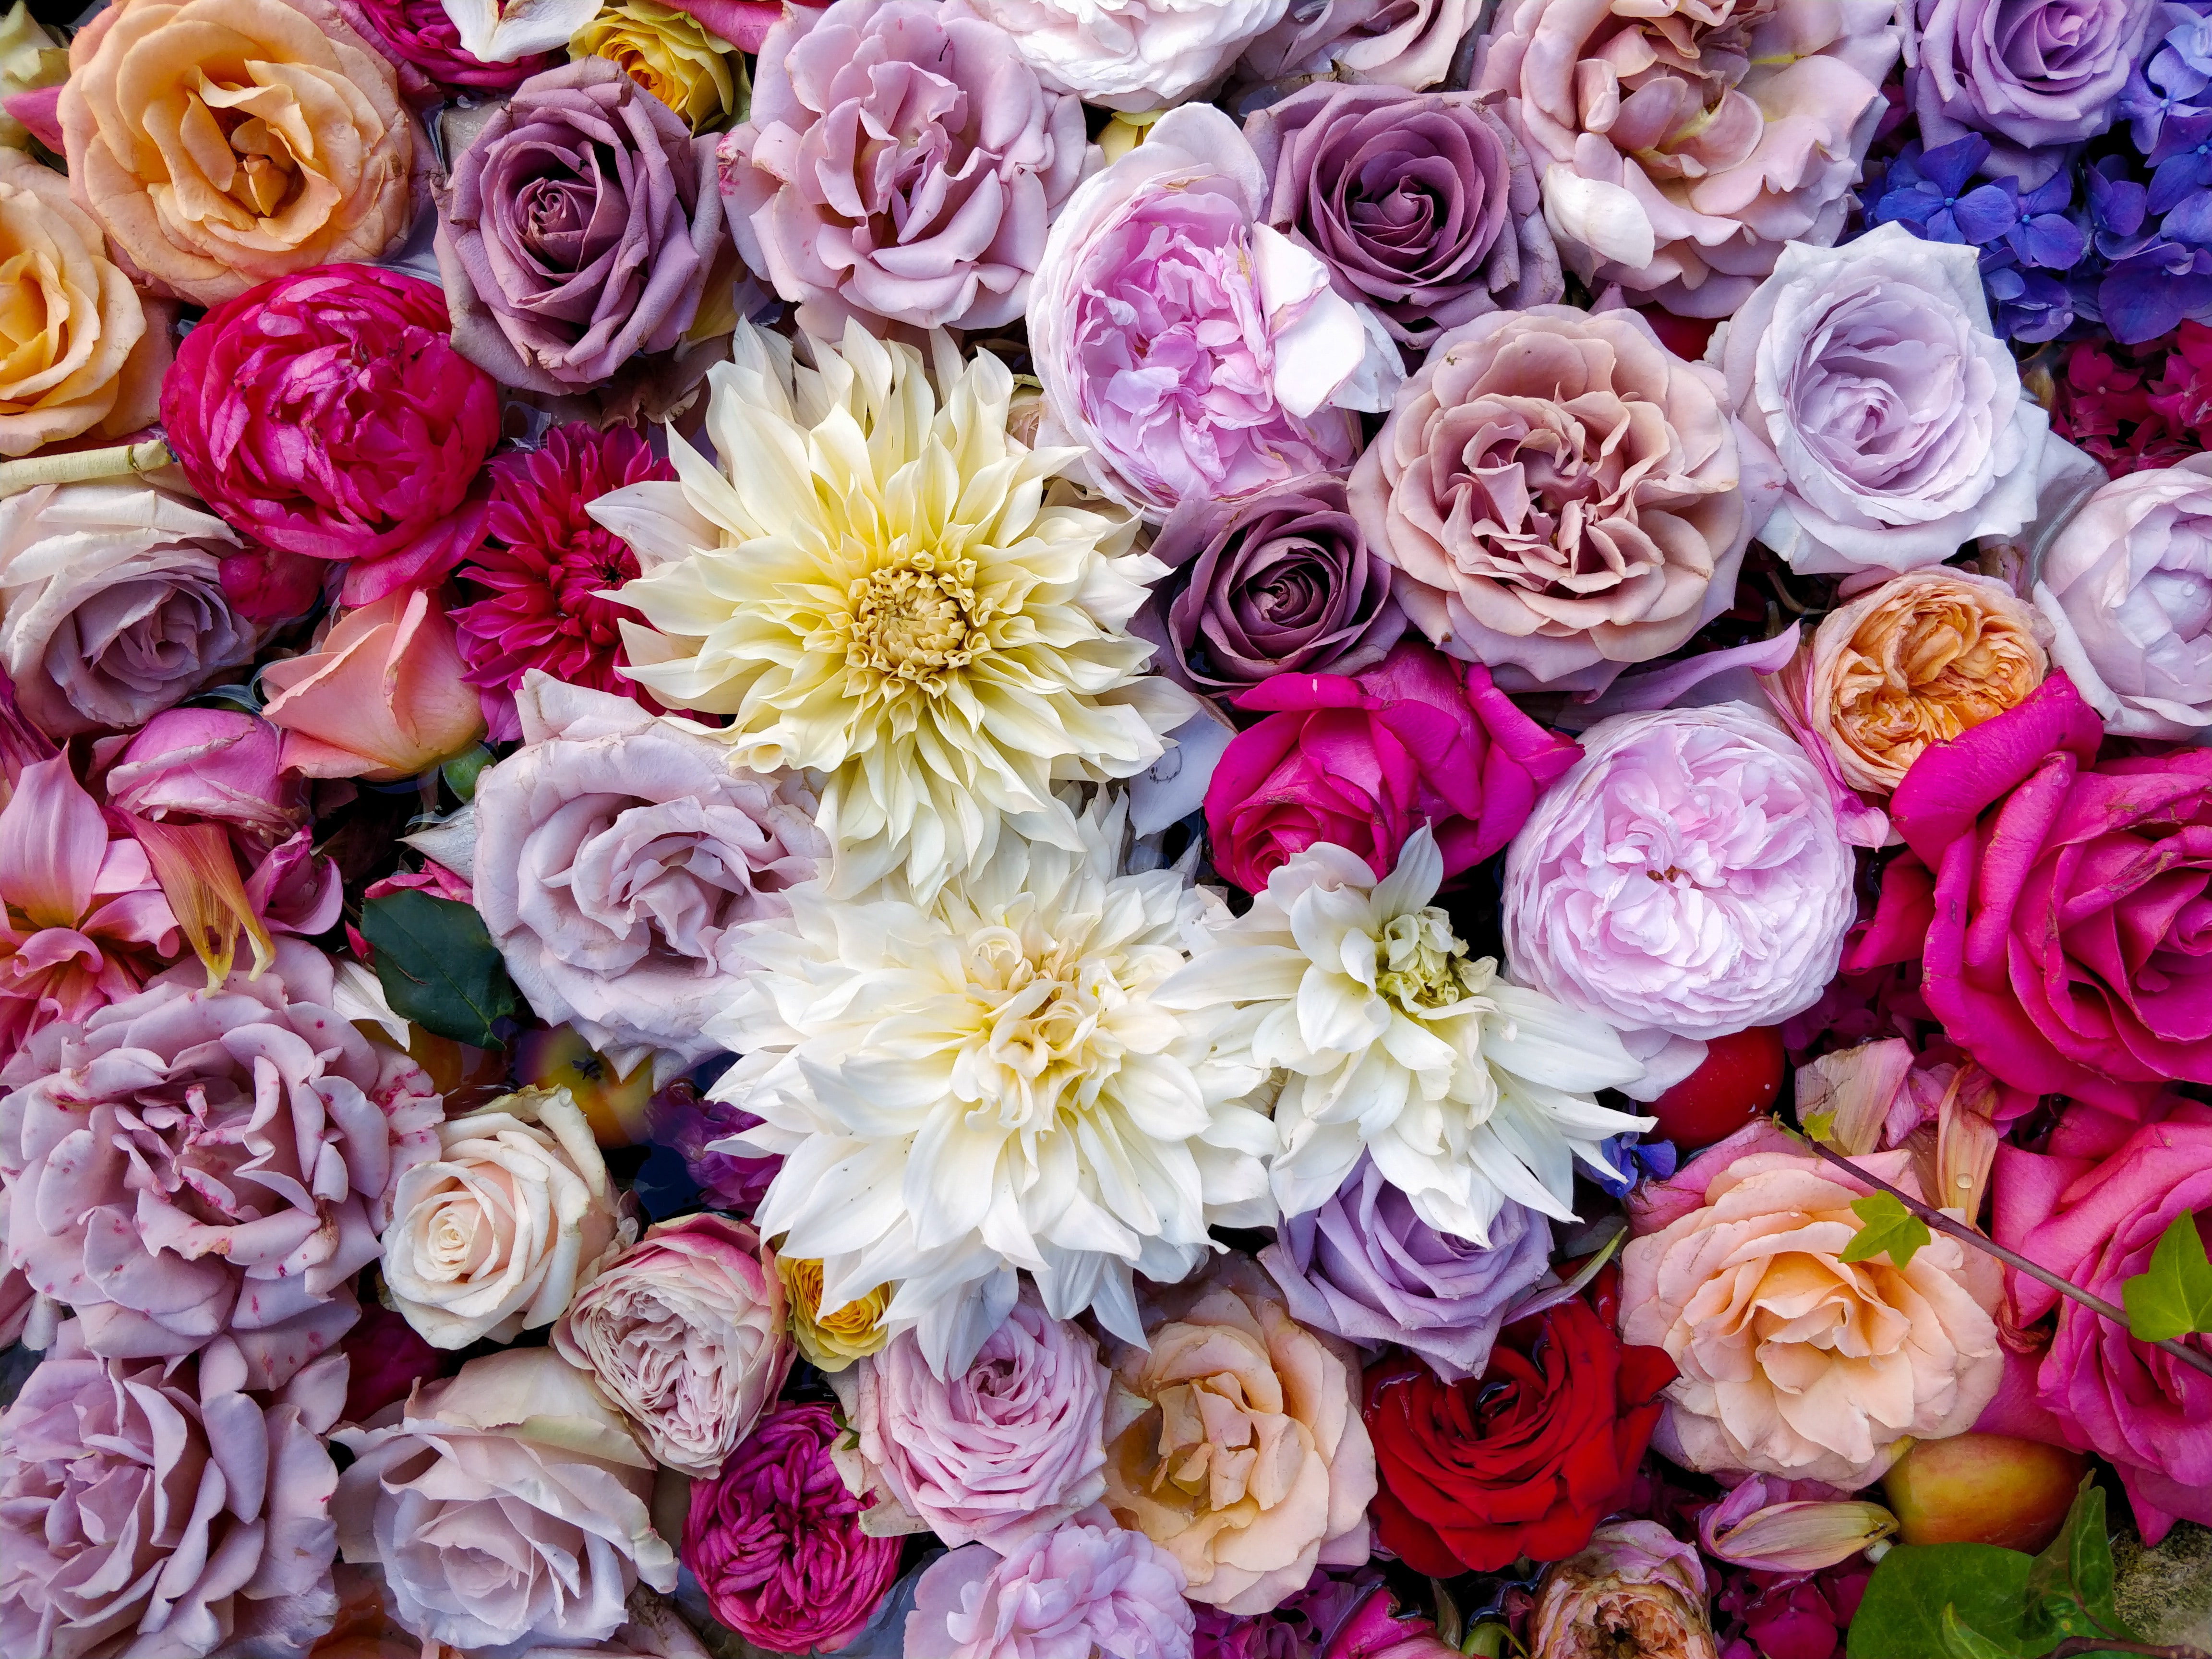 flowers, roses, multicolored, motley, bouquet, dahlias, composition Image for desktop